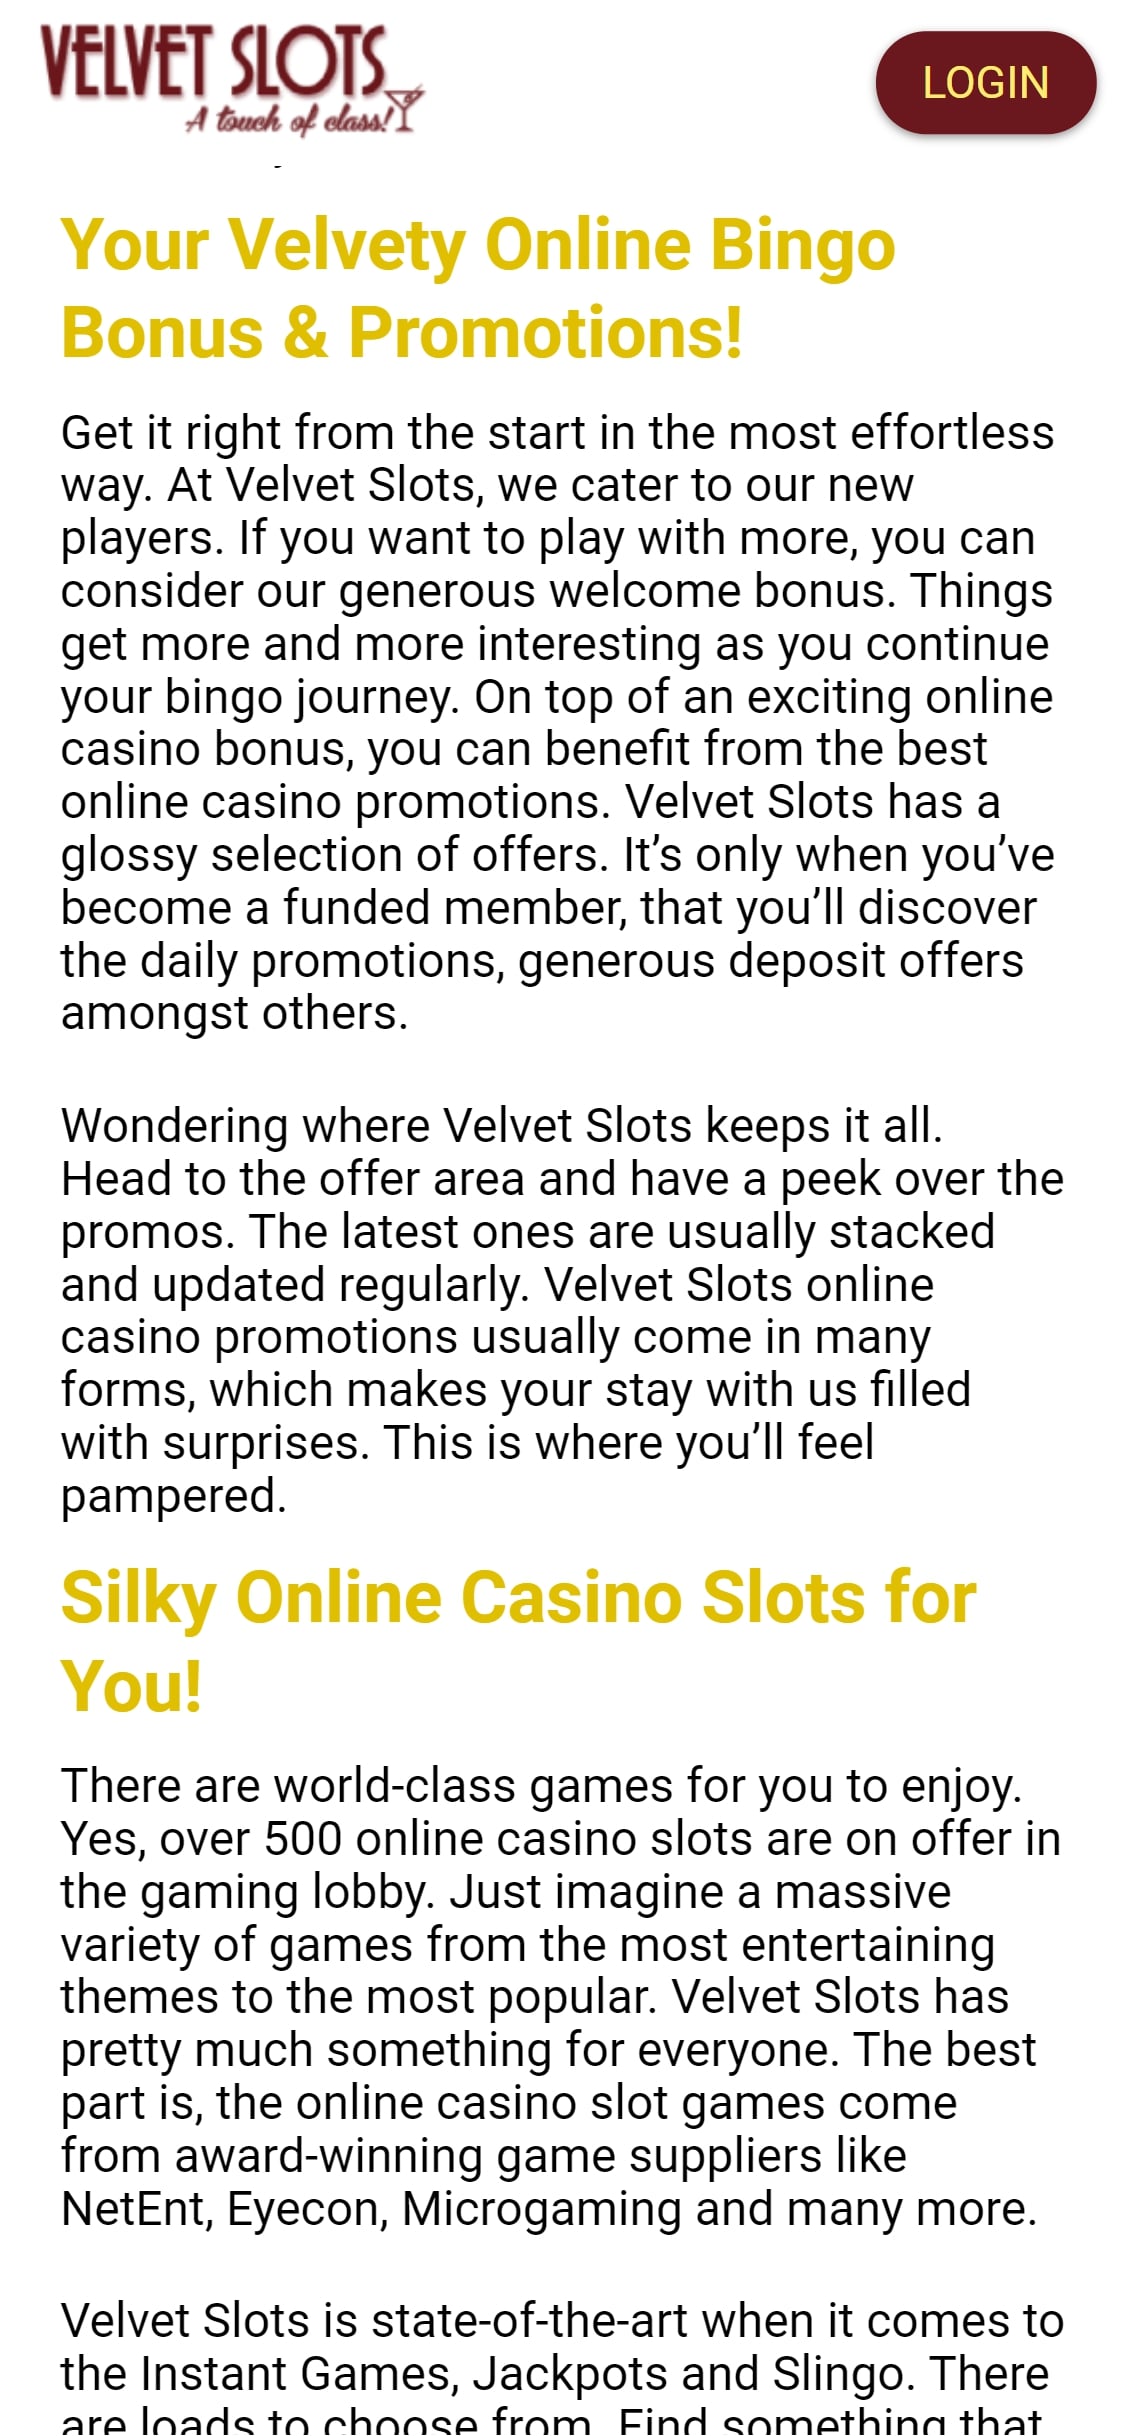 Velvet Slots Casino Mobile No Deposit Bonus Review